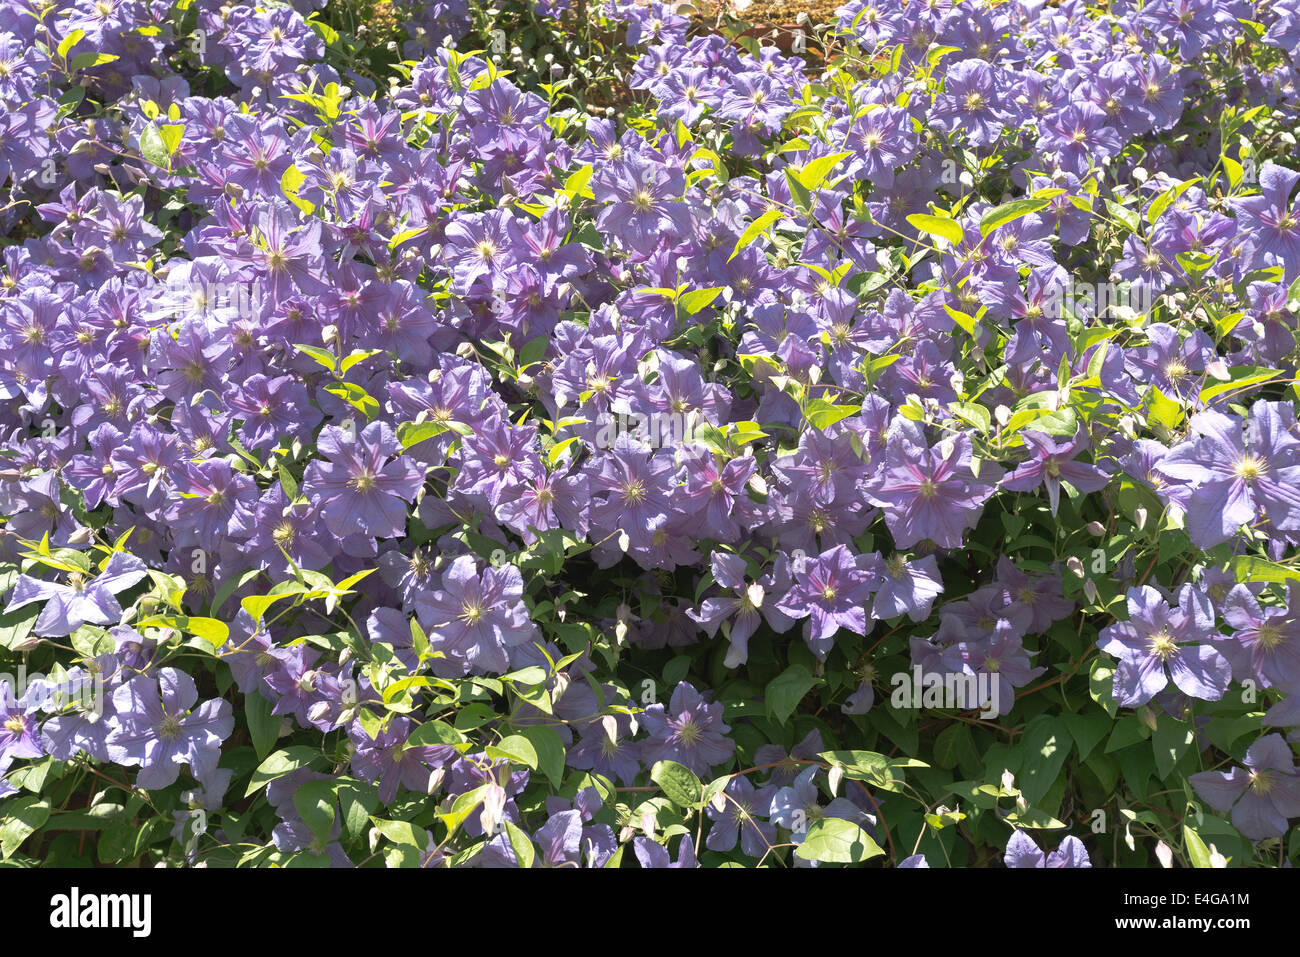 Lila pálido abundantes flores púrpura de clematis arbusto complementan el azul claro del cielo soleado de verano Foto de stock